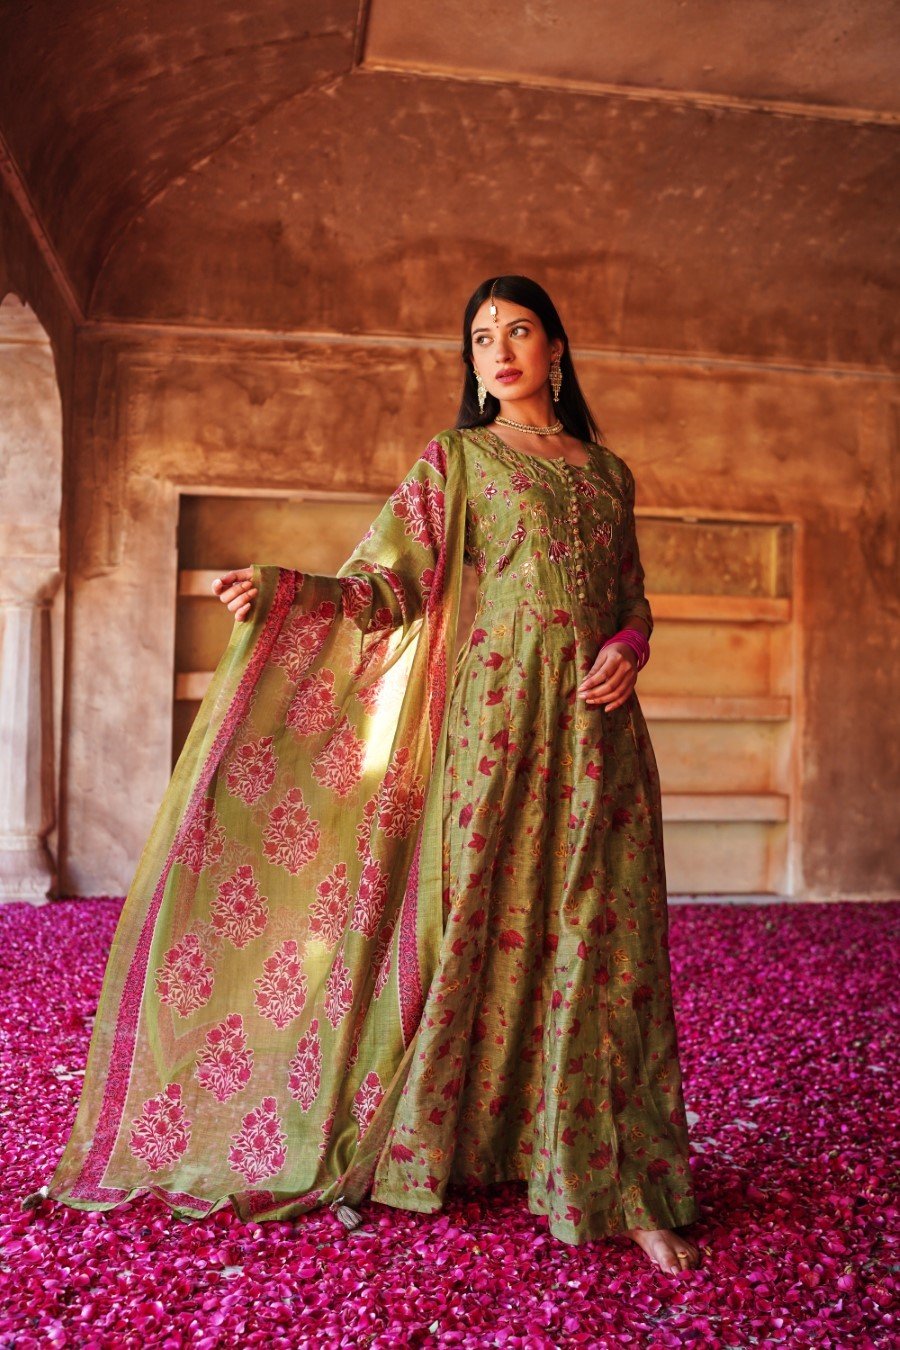 Spring Green Ethnic Embellished Anarkali Set with Dupatta